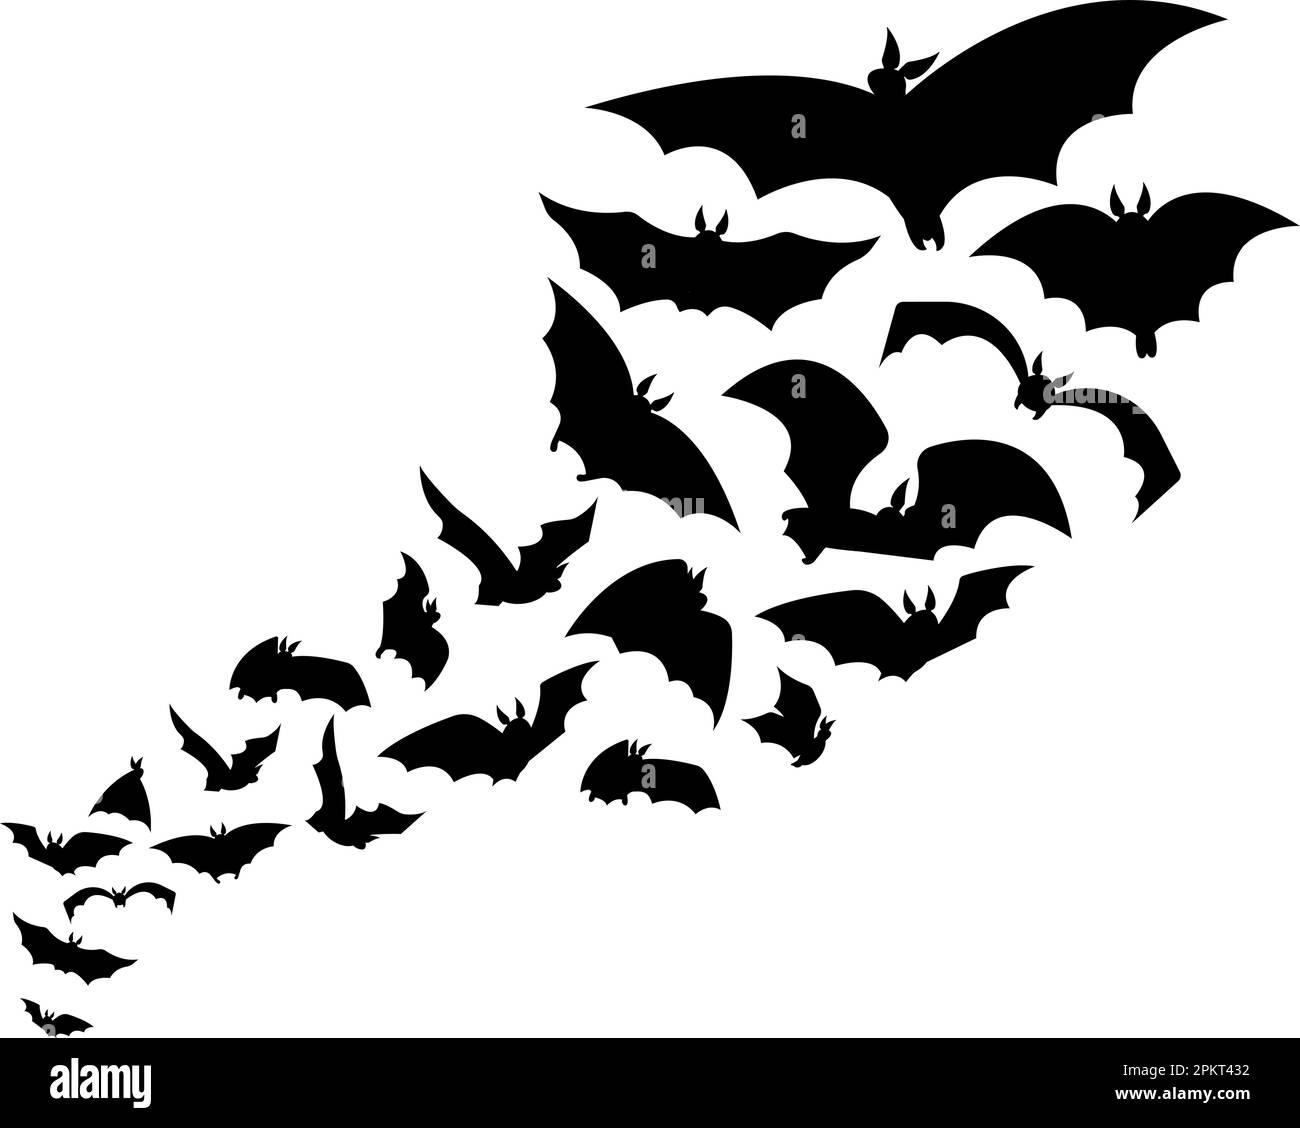 Halloween fliegende Schwarm Fledermäuse, gruselige Grafik mit Horrorsilhouette. Tiervampire, isolierte, schwarze, gotische, gruselige Kreatur. Mystischer Nachtvektor Stock Vektor